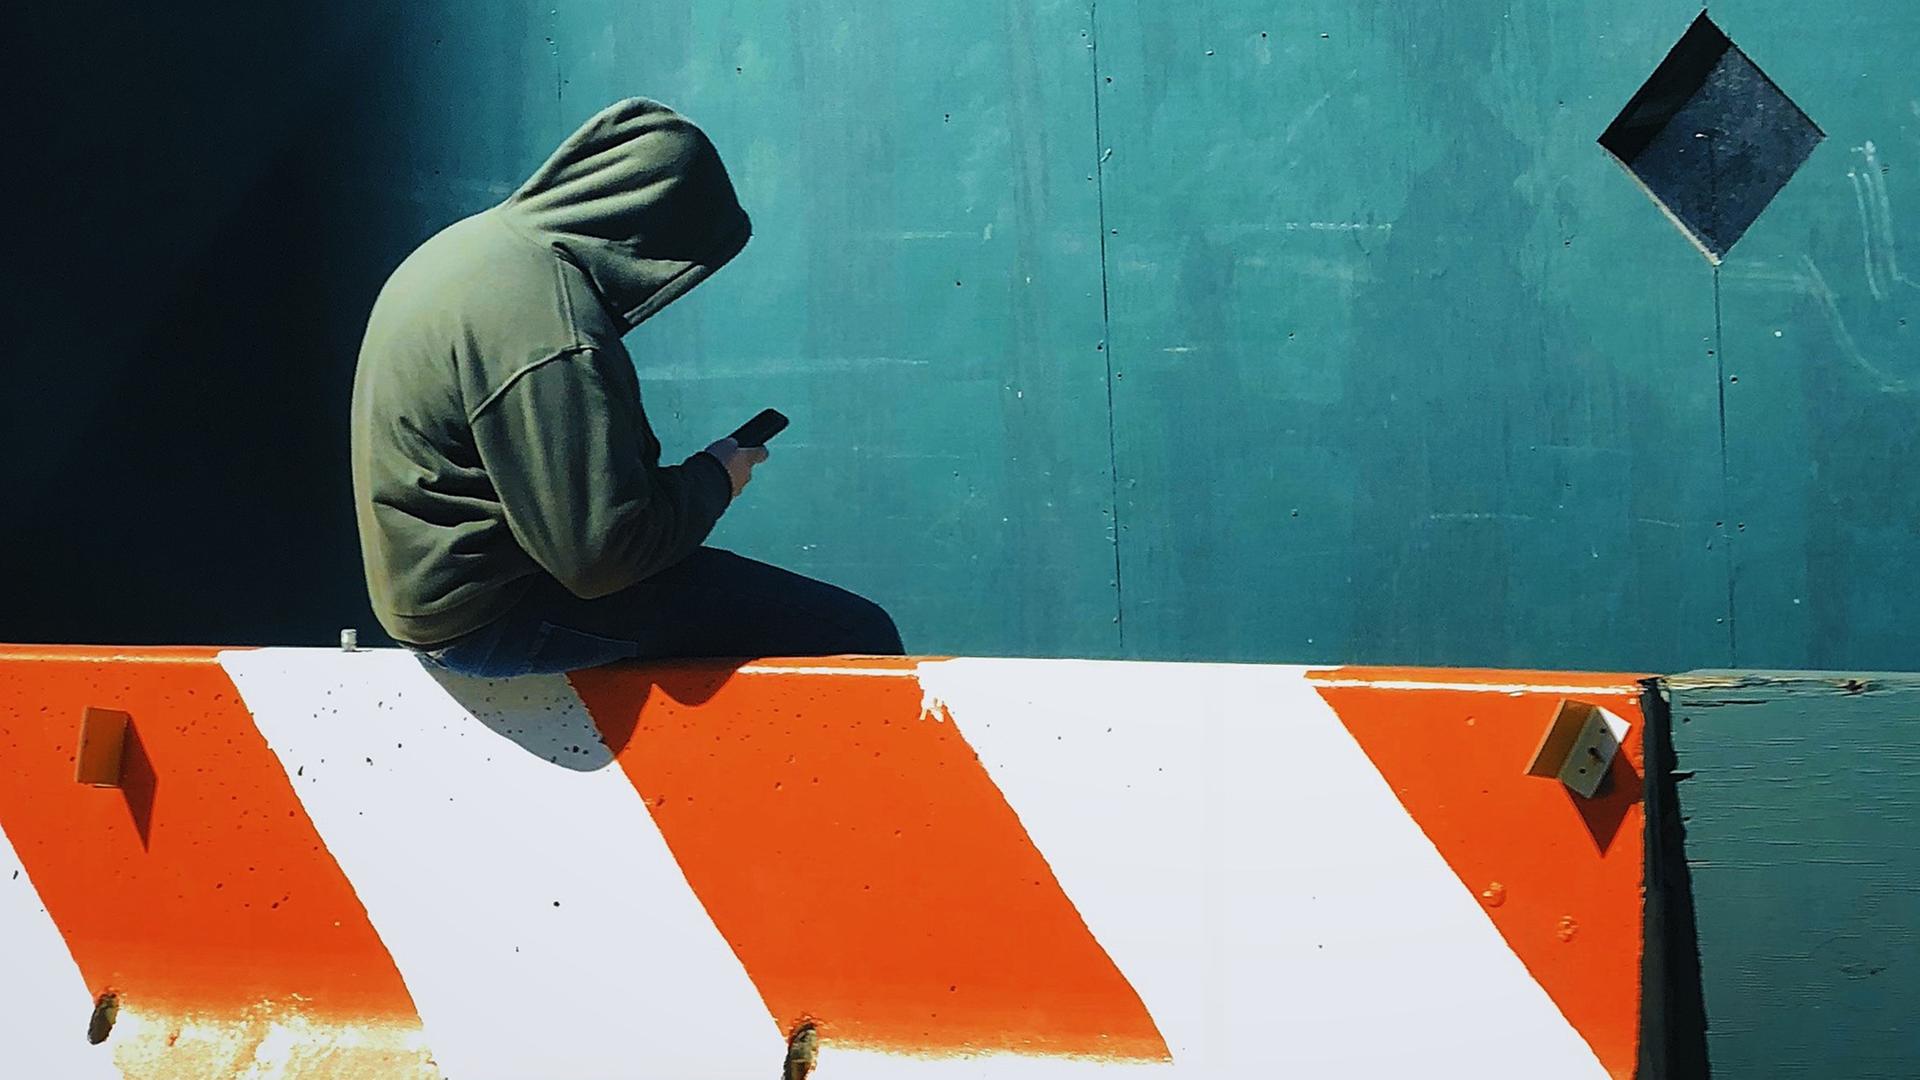 Ein junger Mensch mit Kapuzenshirt und Smartphone in der Hand sitzt auf einer Barriere.